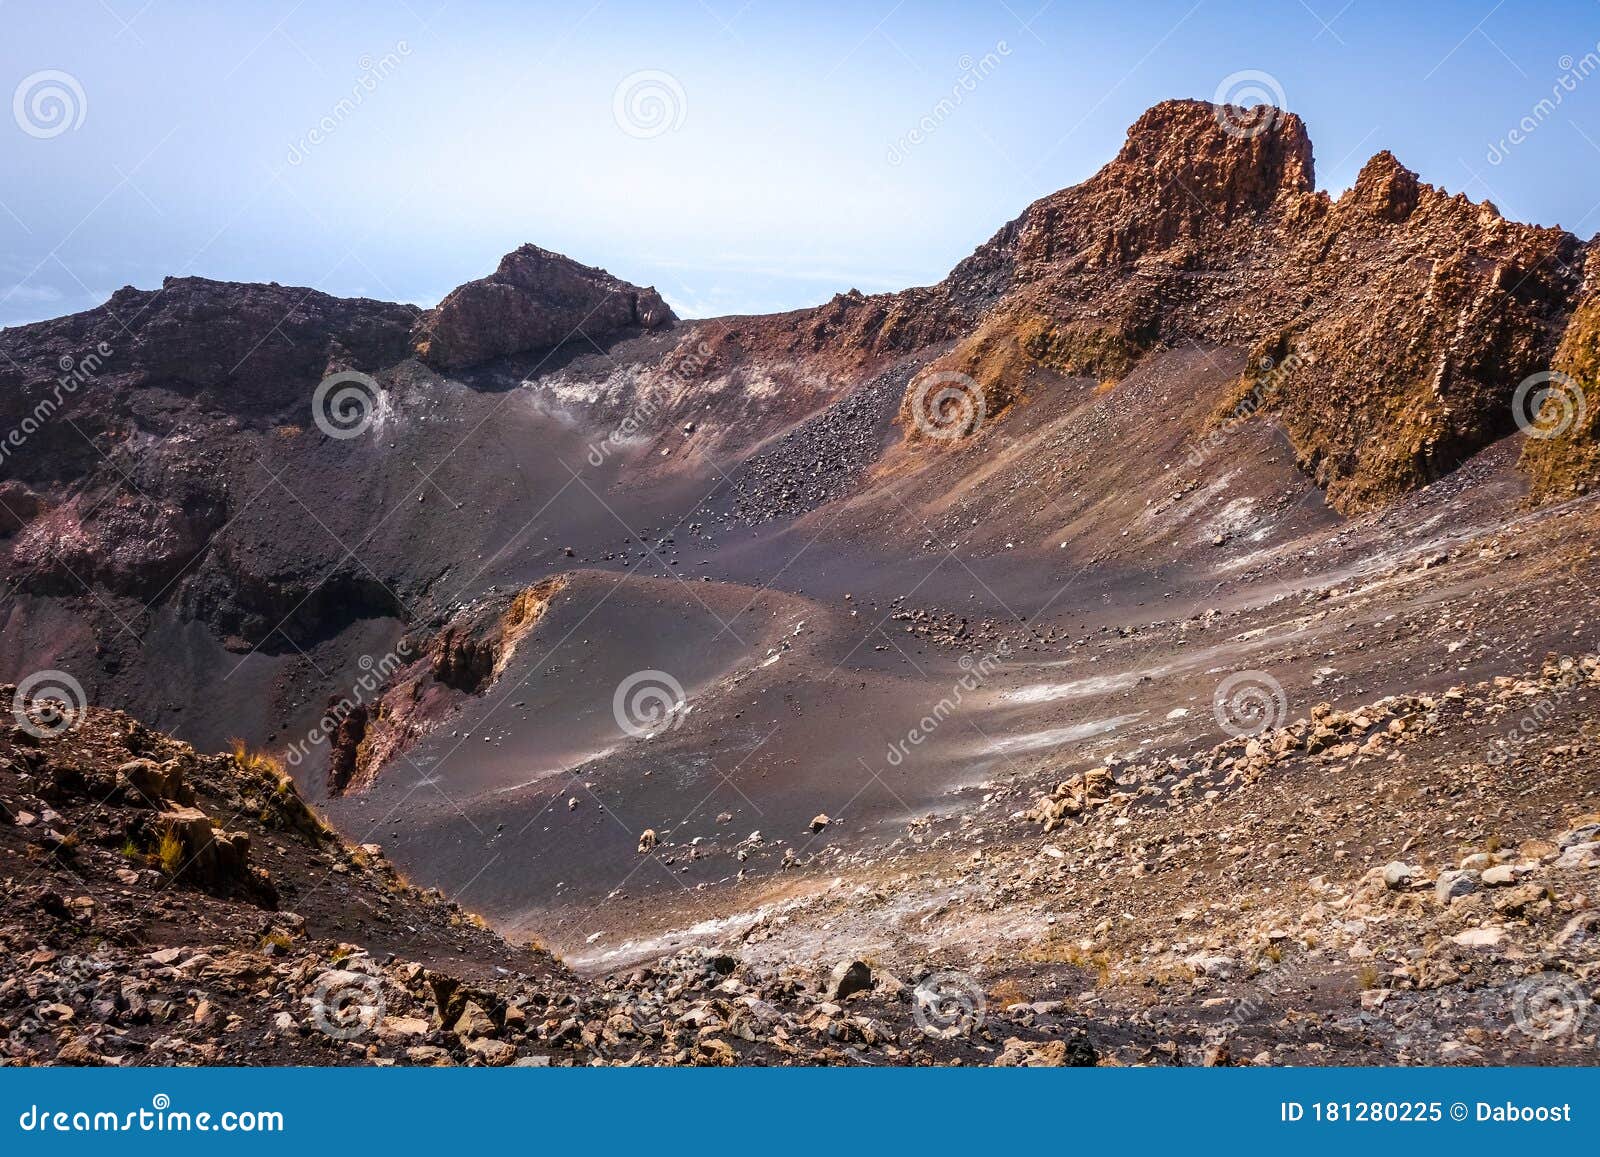 pico do fogo crater, cha das caldeiras, cape verde